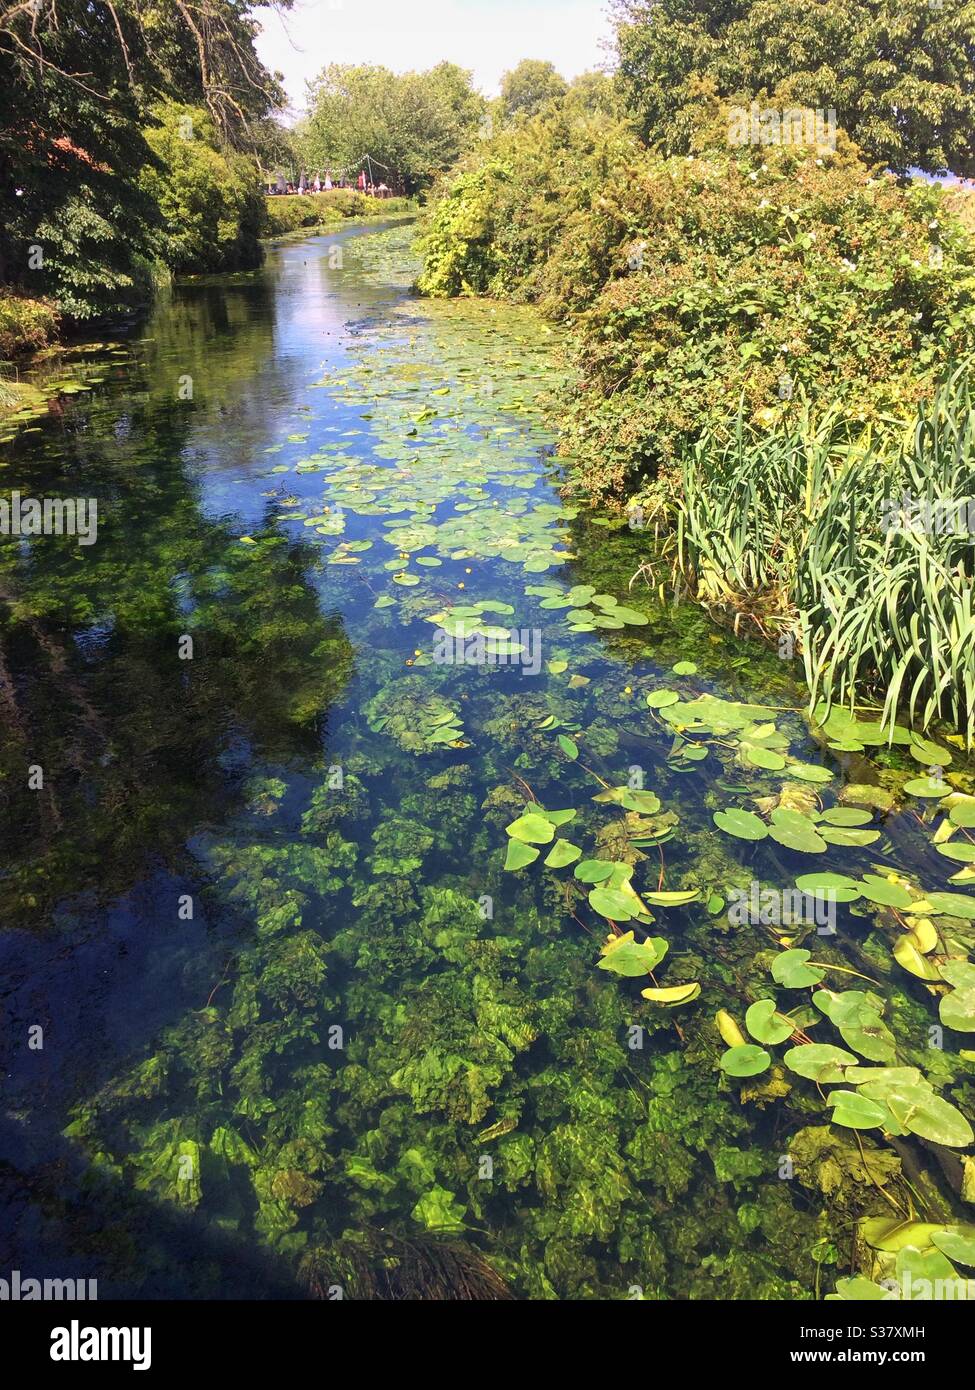 Les nénuphars et autres plantes aquatiques sauvages poussent dans et autour de la rivière Lea à Tottenham le jour de l'été Banque D'Images